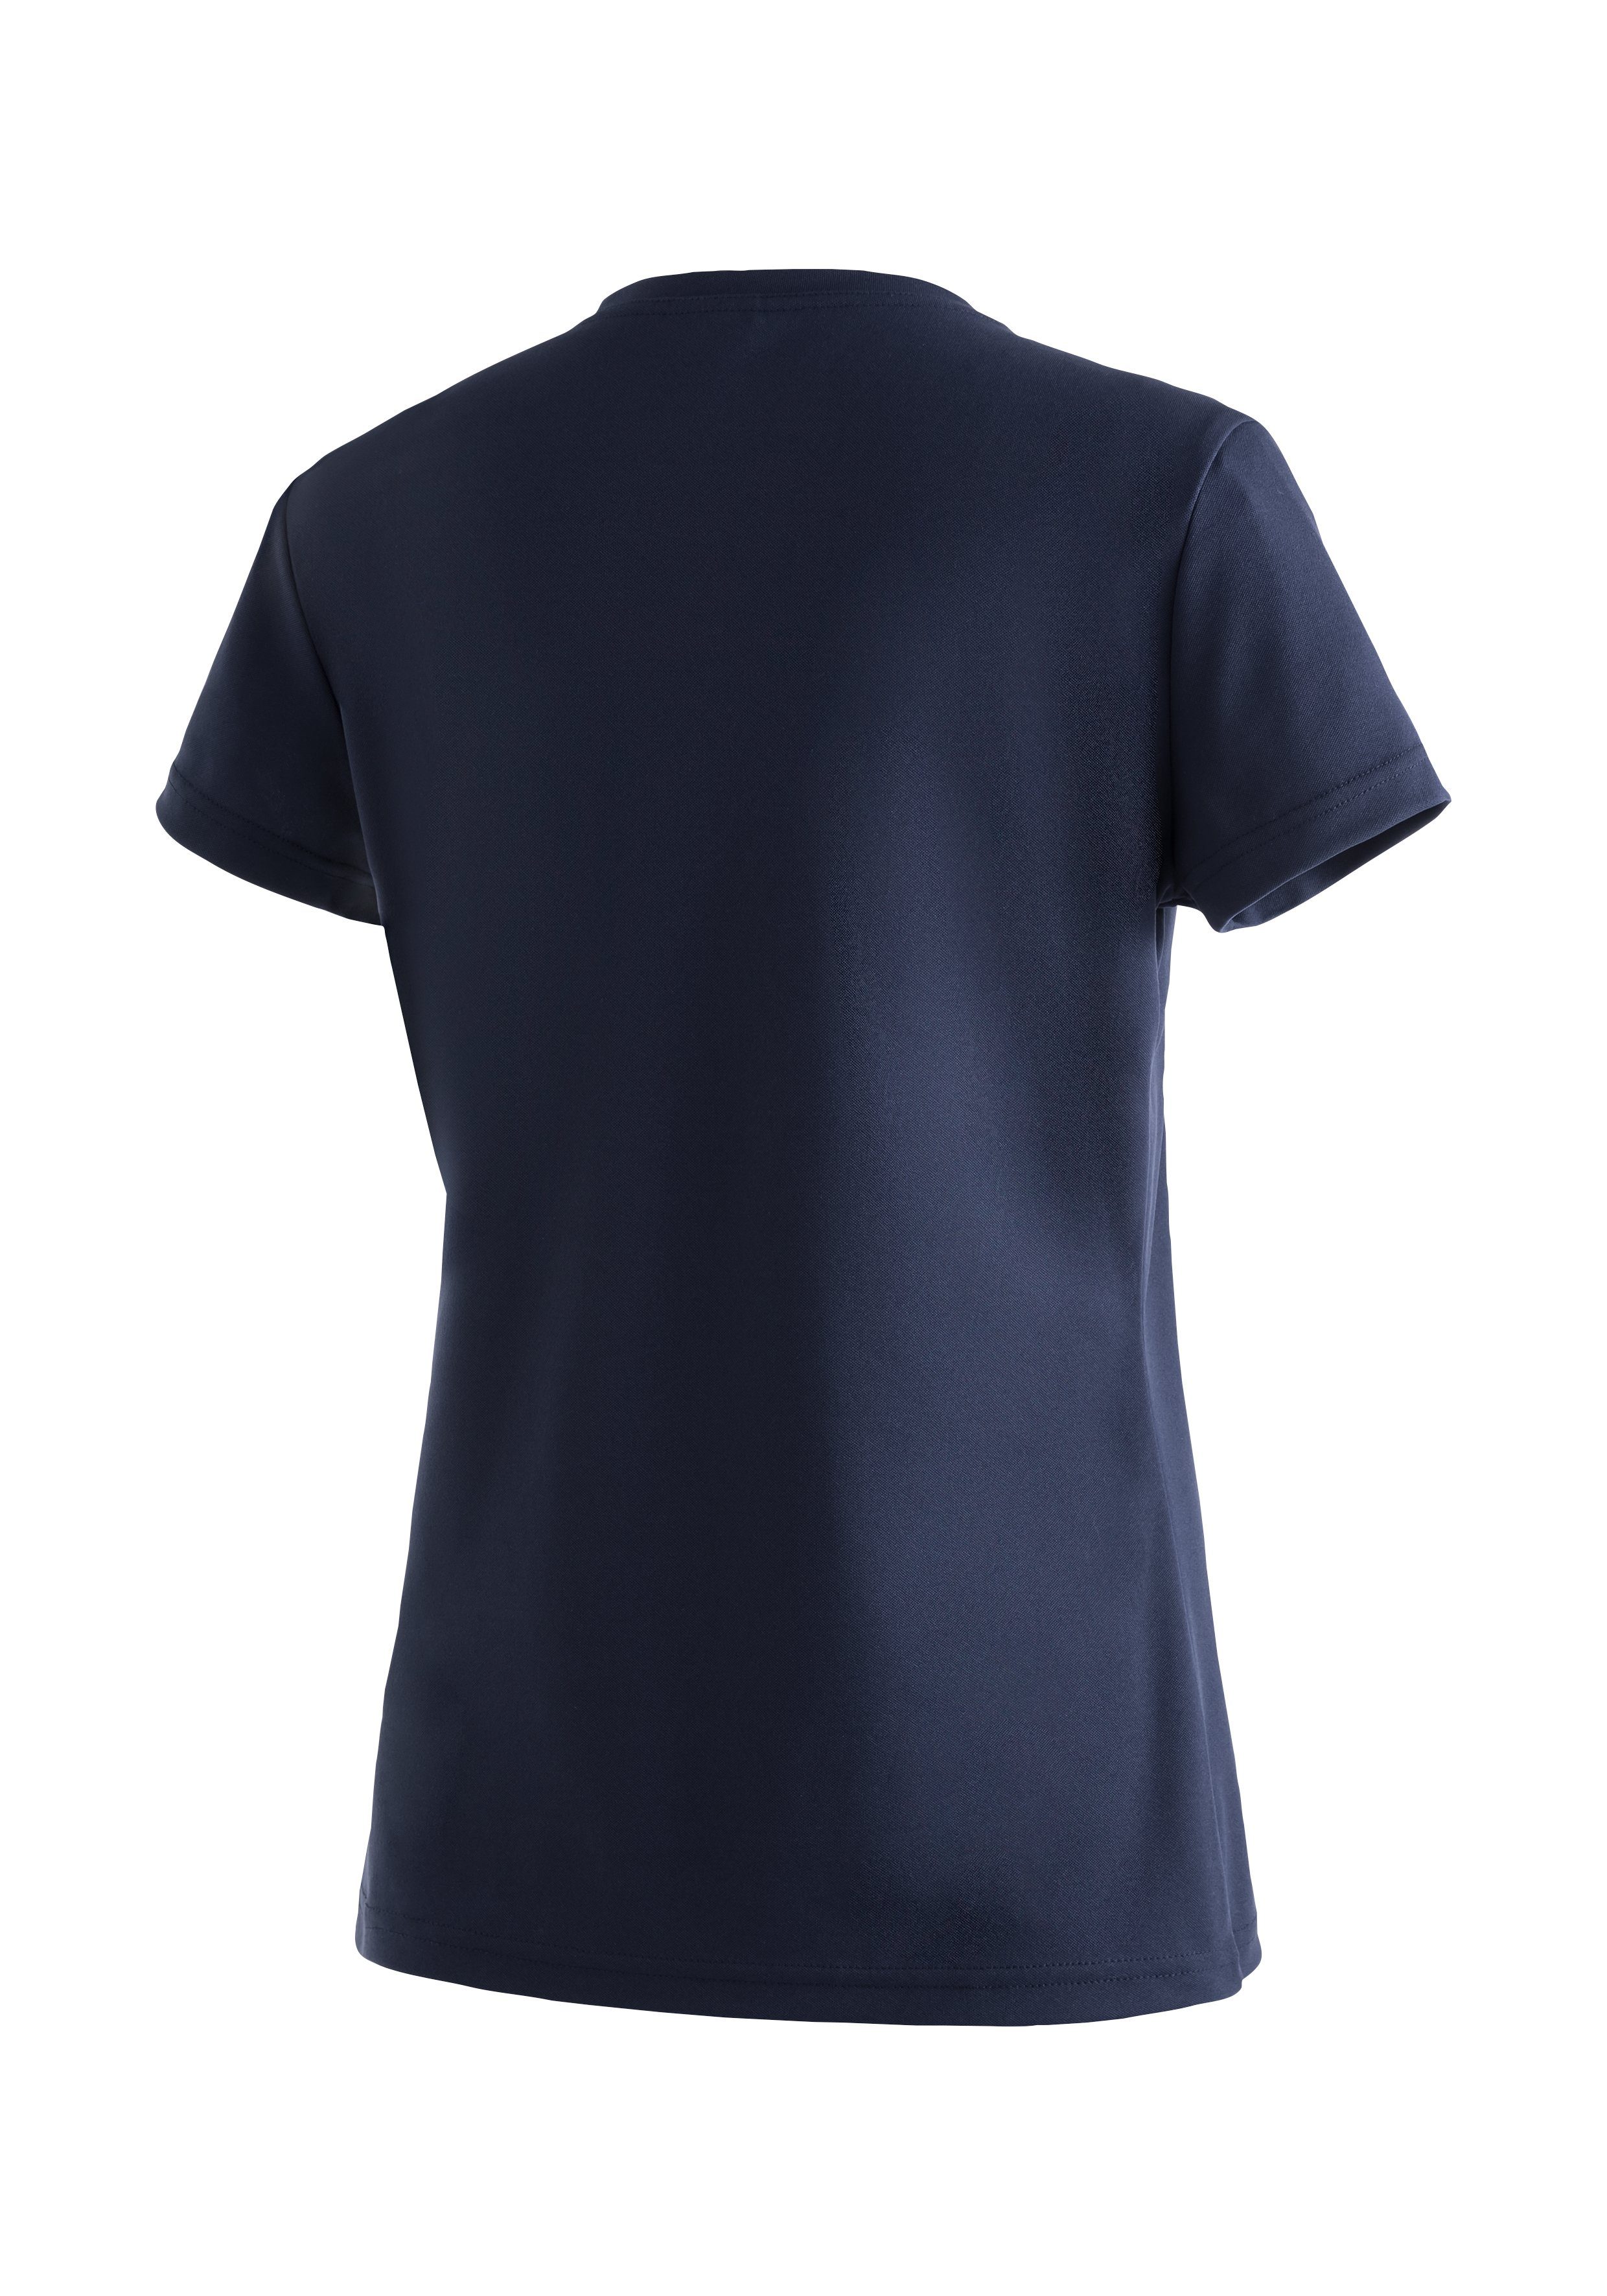 für Maier Sports T-Shirt, Kurzarmshirt Wandern Trudy dunkelblau Freizeit Funktionsshirt Damen und